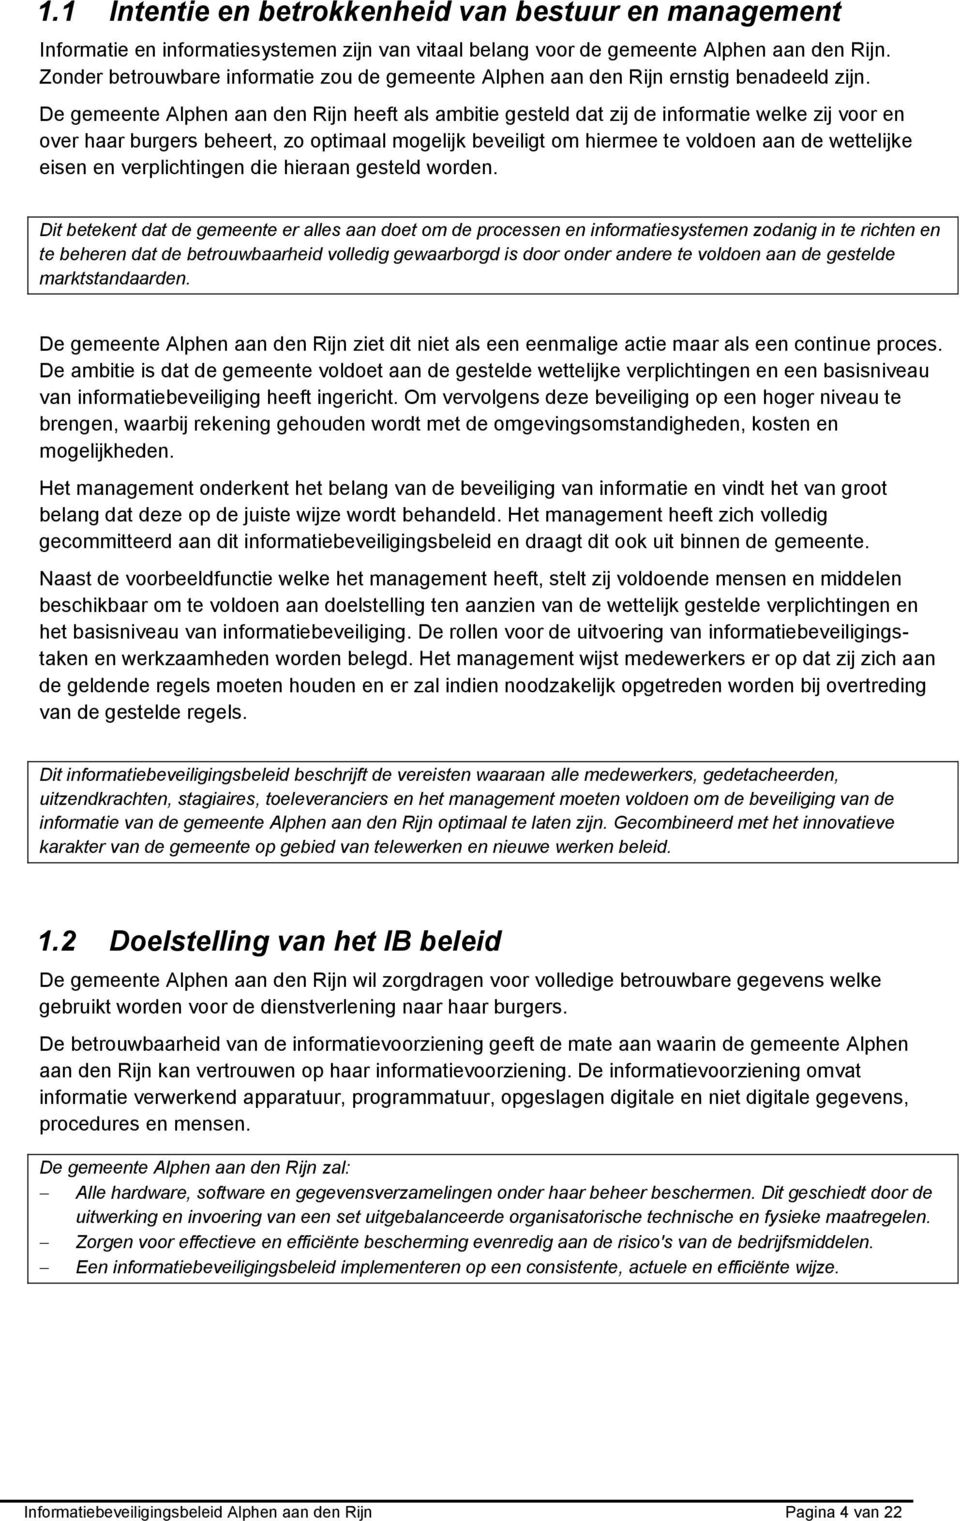 De gemeente Alphen aan den Rijn heeft als ambitie gesteld dat zij de informatie welke zij voor en over haar burgers beheert, zo optimaal mogelijk beveiligt om hiermee te voldoen aan de wettelijke